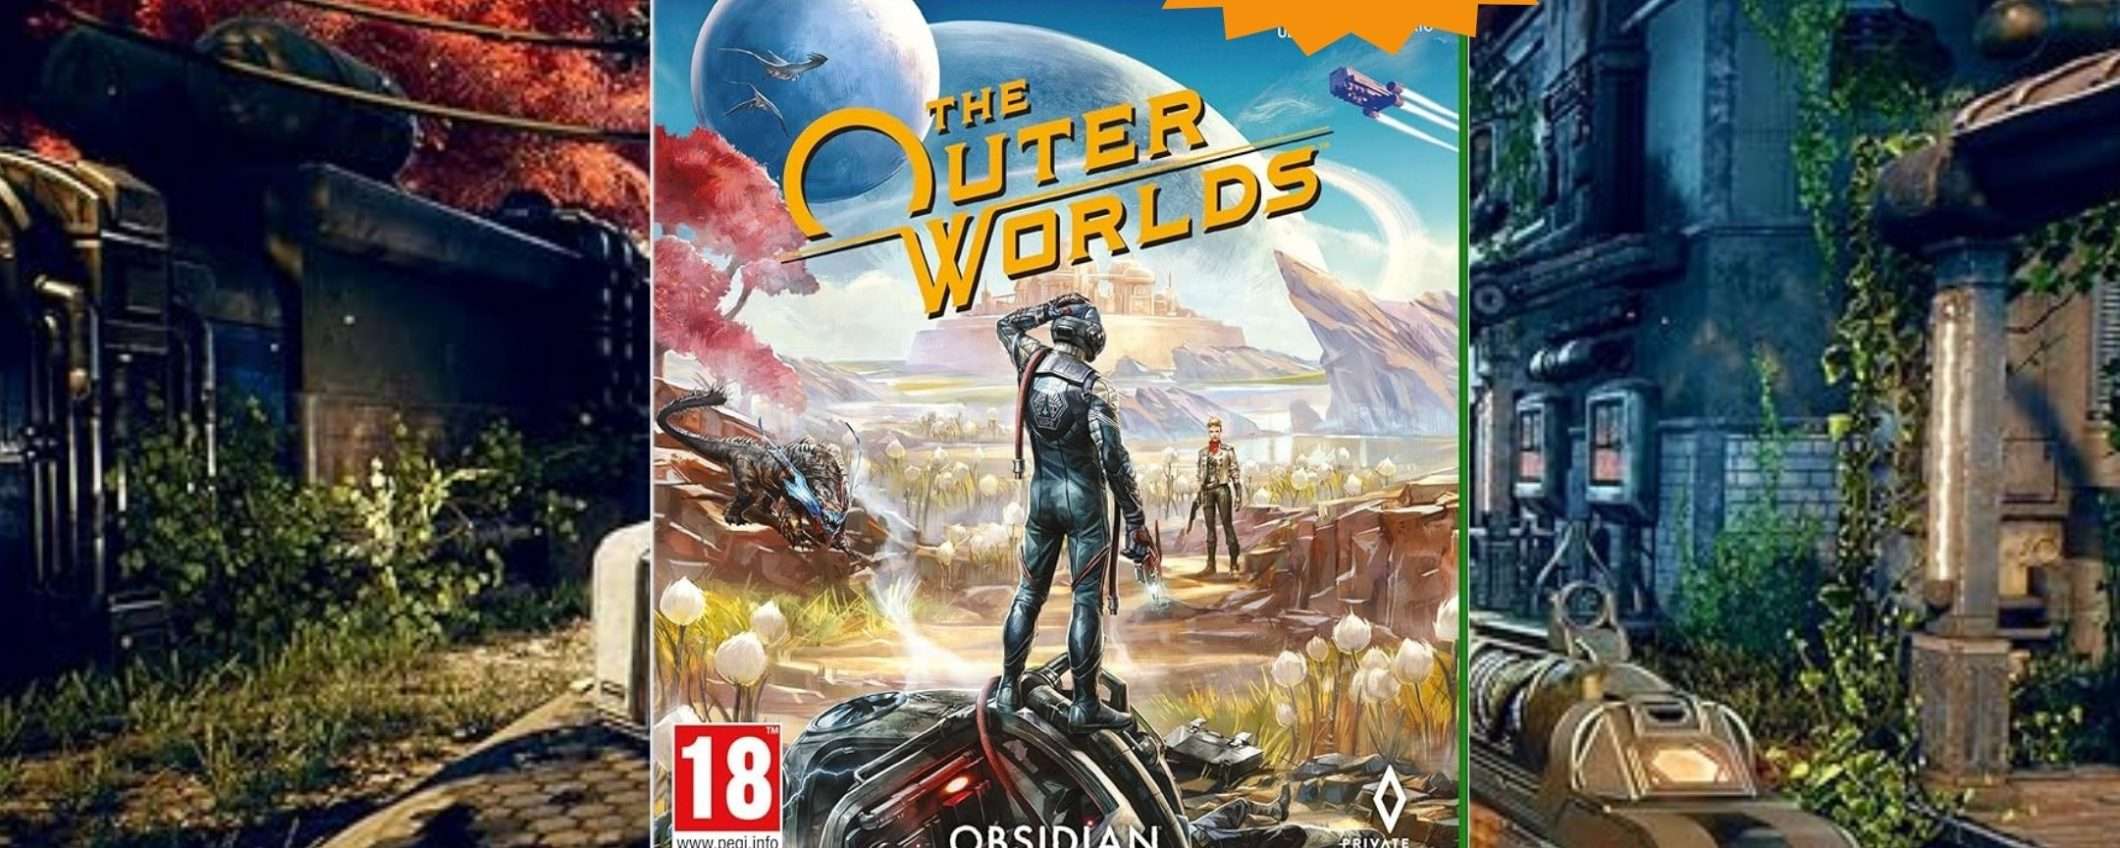 The Outer Worlds per Xbox: CROLLO del prezzo su Amazon (-84%)